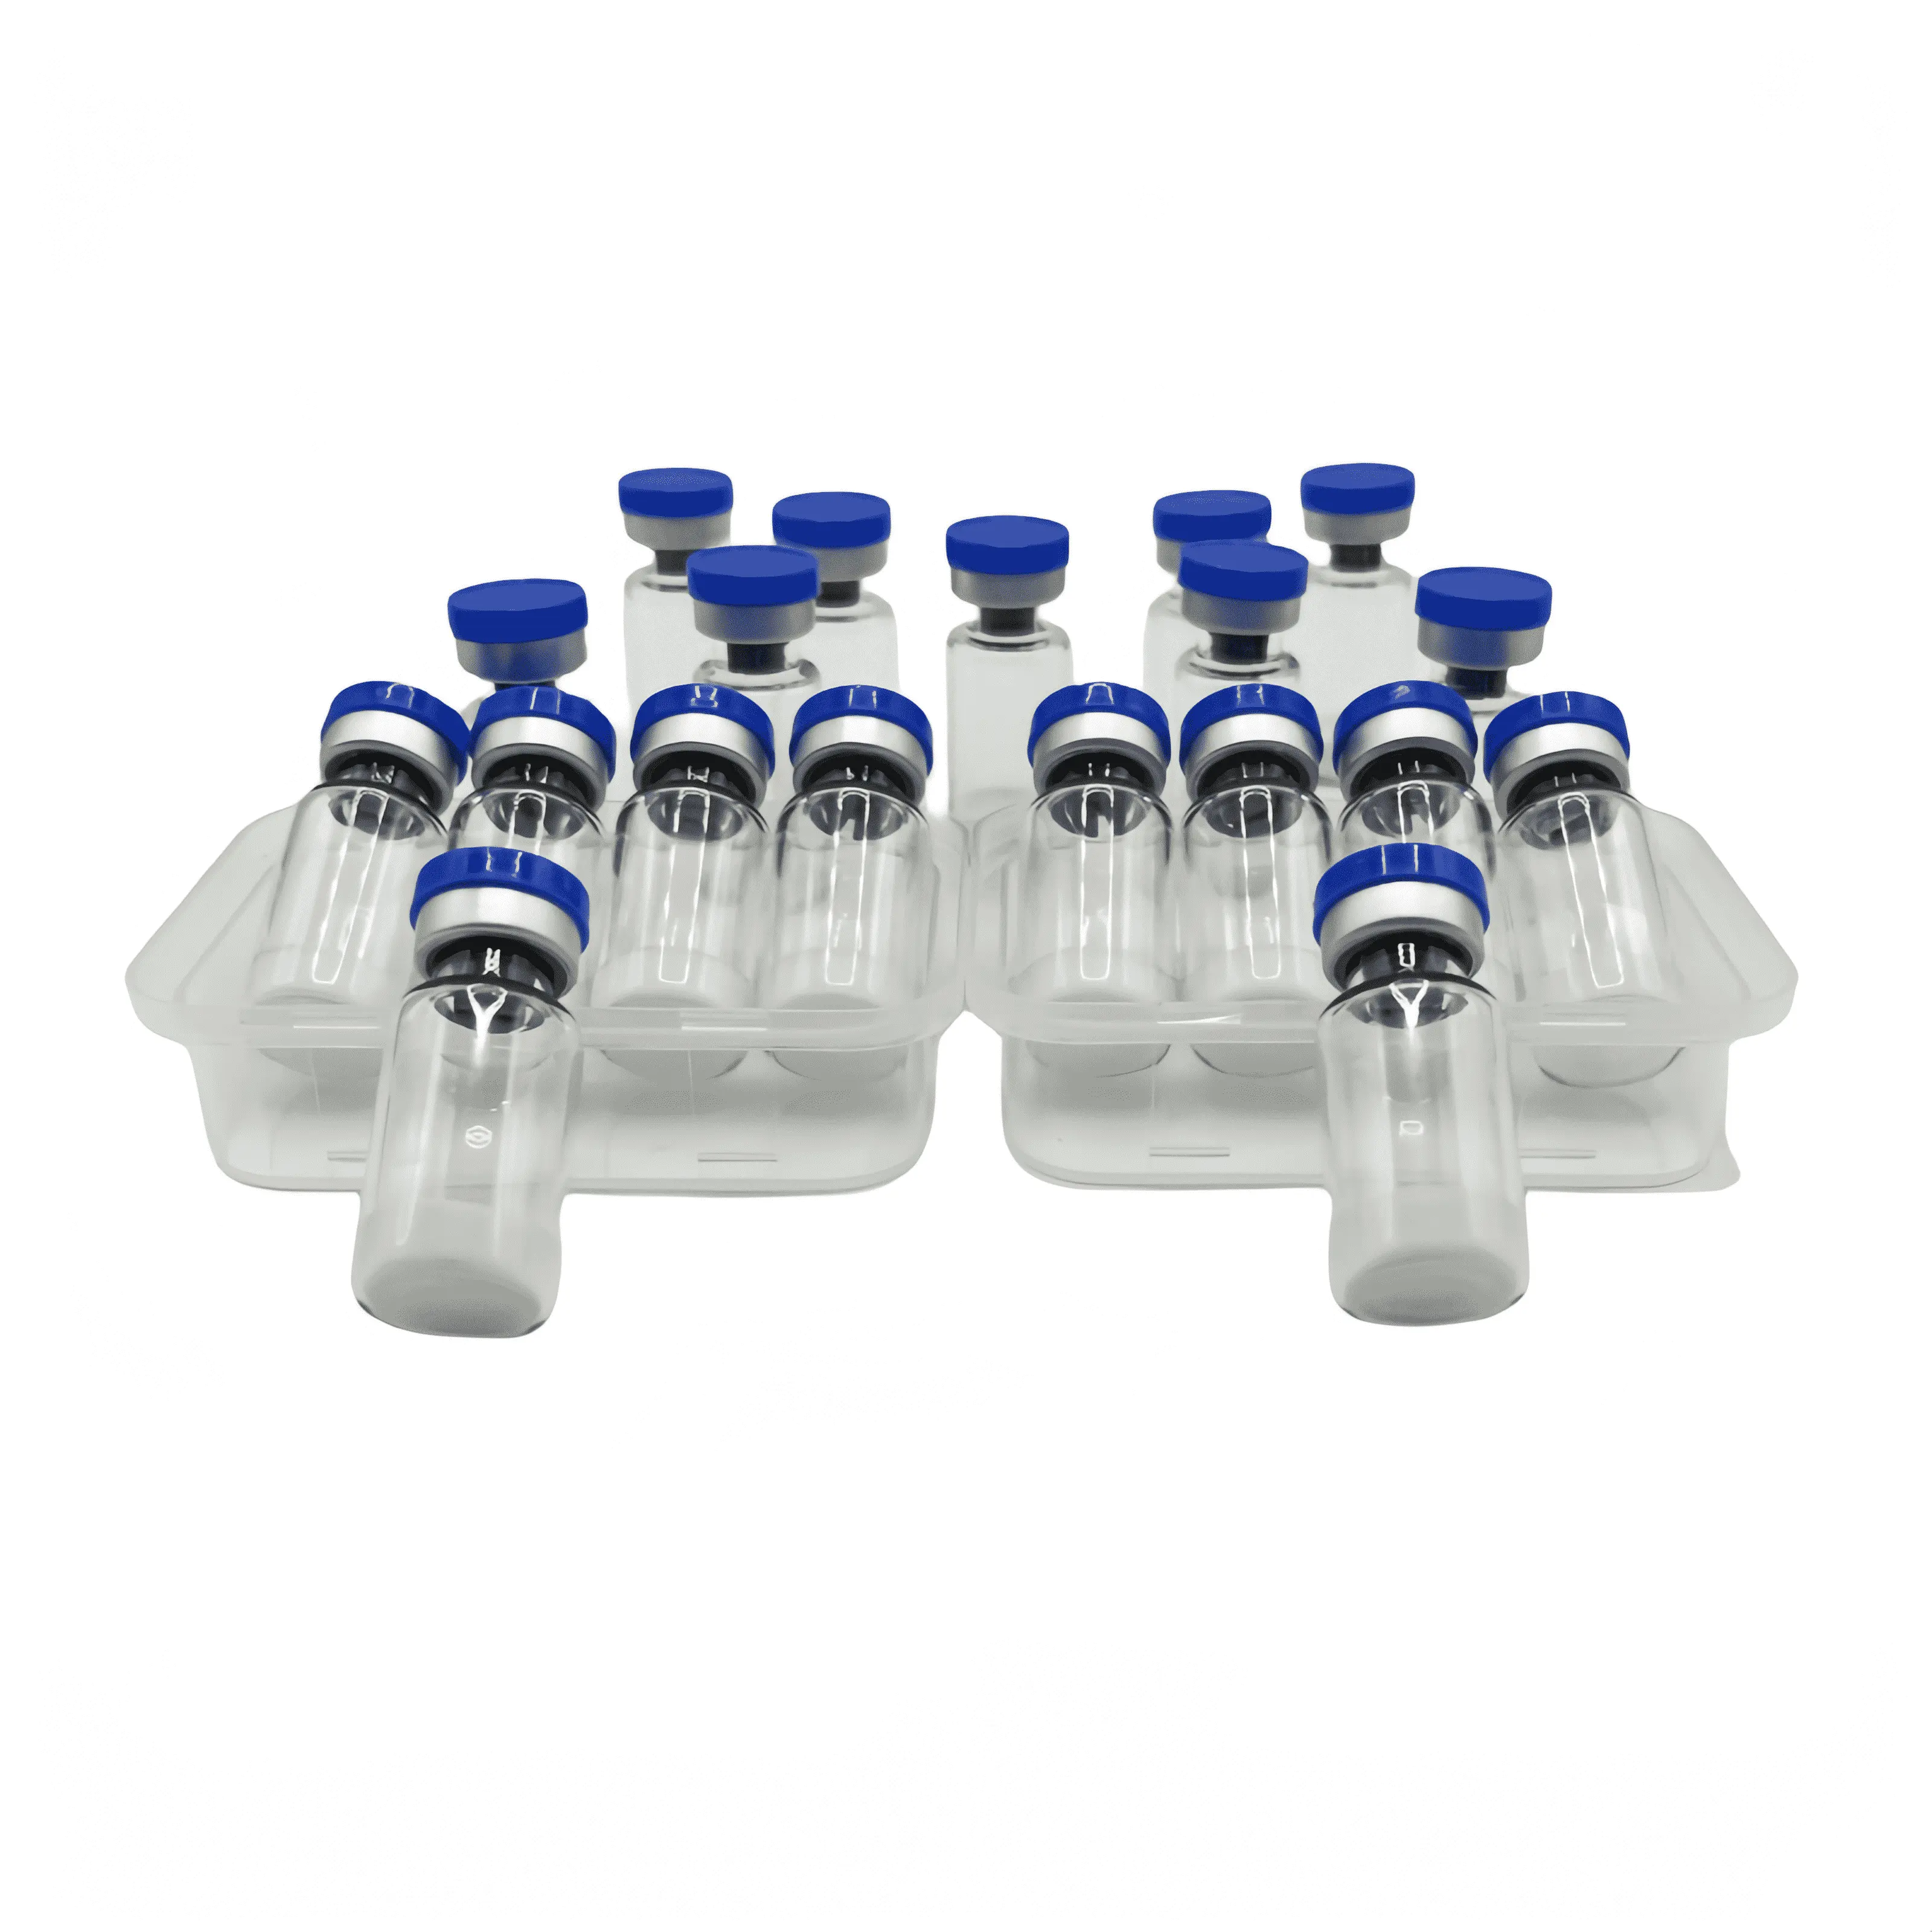 Livraison gratuite poudre de peptide pur en stock en flacons pour la perte de poids avec rapport de test de laboratoire tiers 5mg 10mg 15mg 30mg 1 gramme